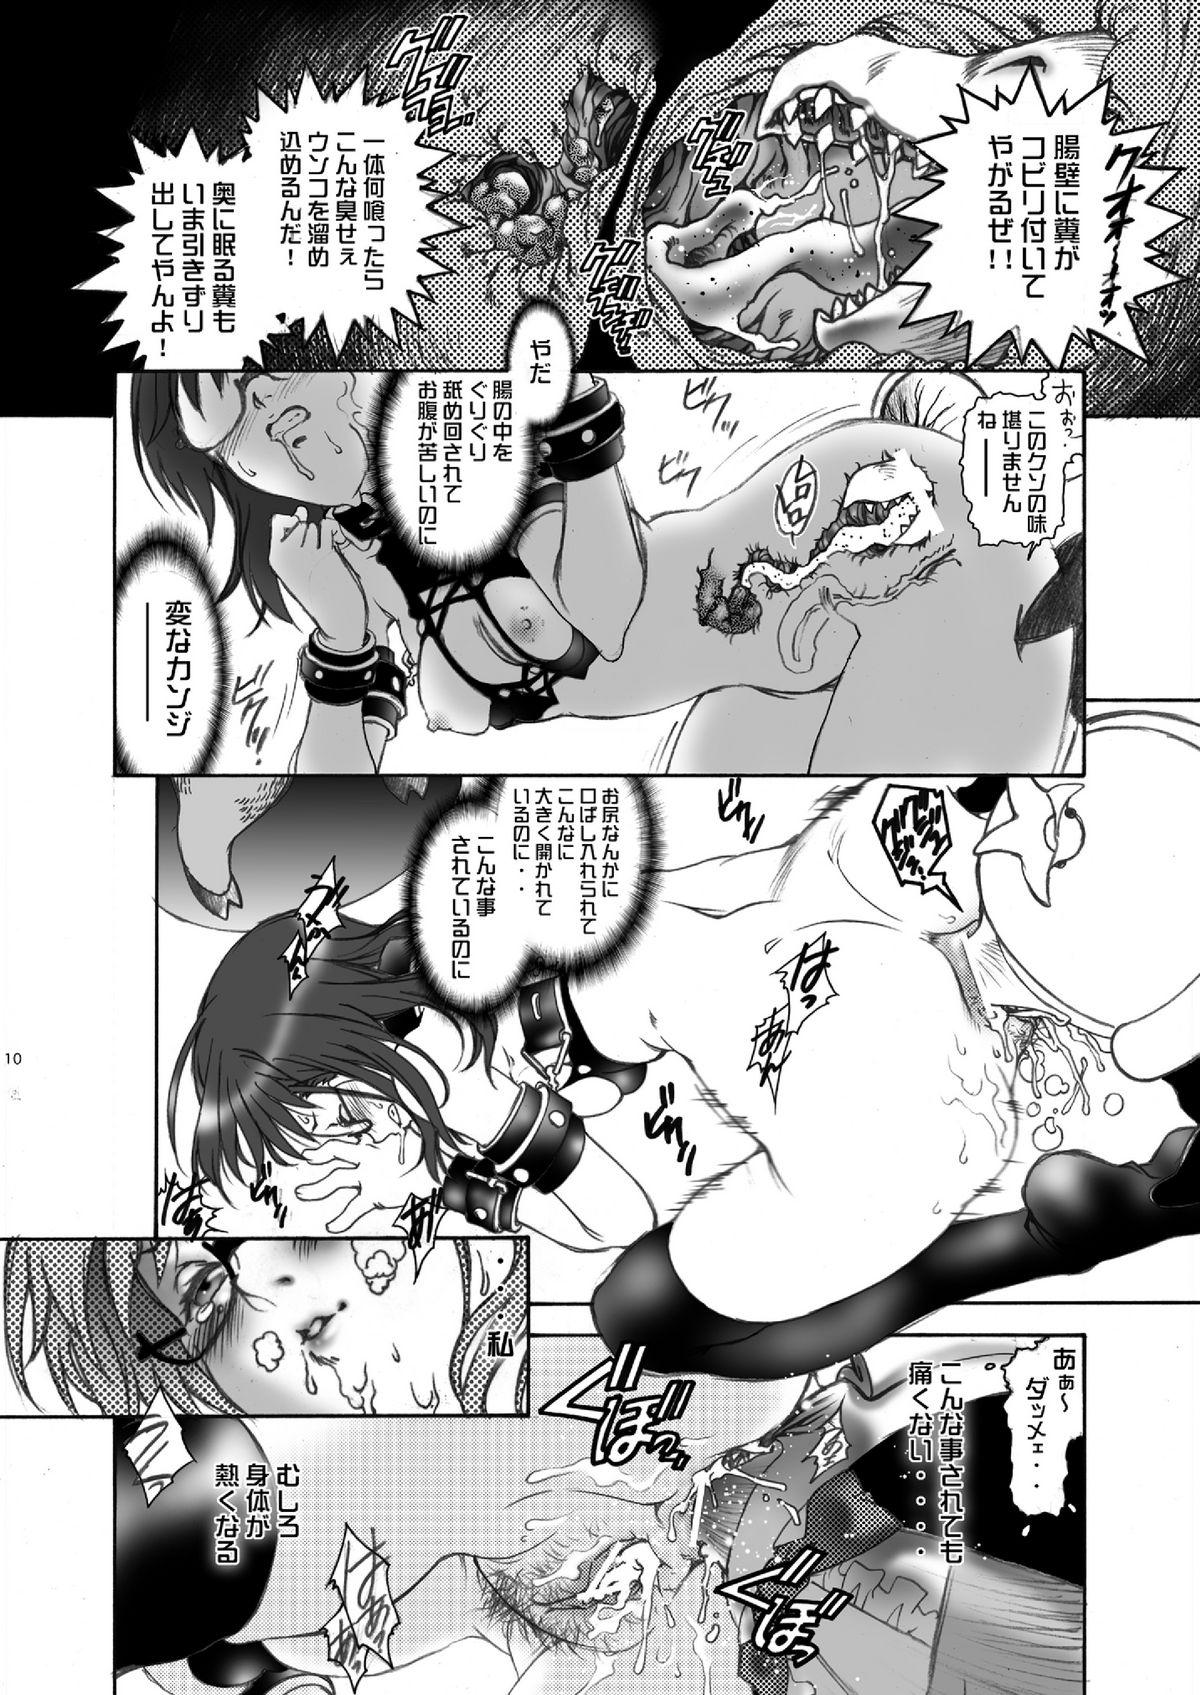 Female Orgasm Ittemasuyo! Saku-chan. - Yondemasuyo azazel san Gordibuena - Page 10